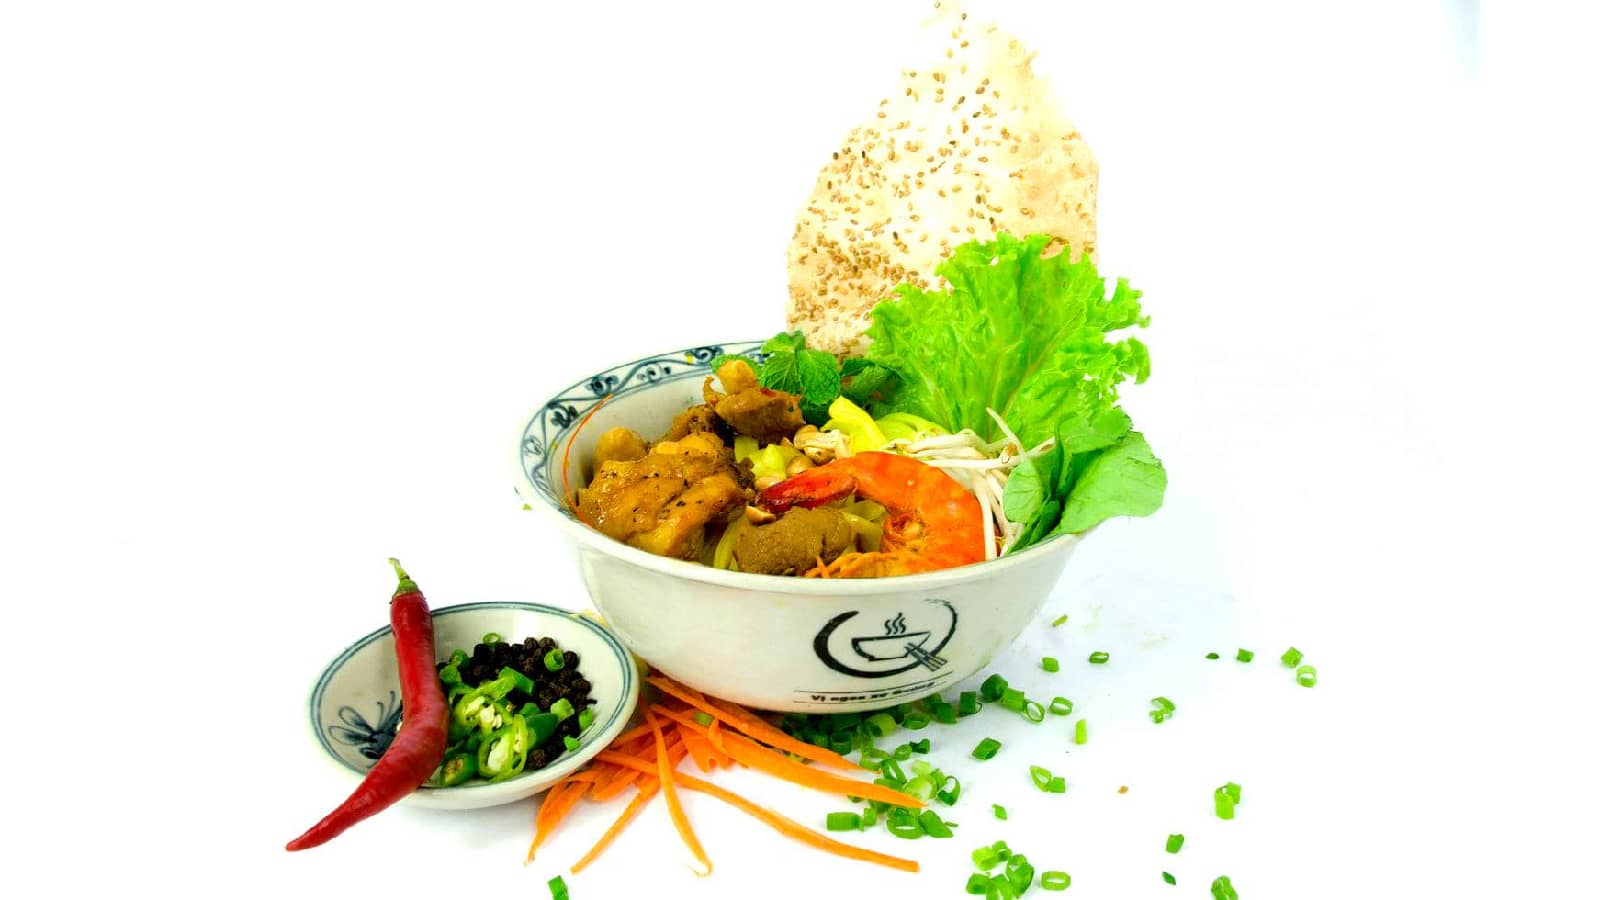 Mì Quảng là món ăn phải thử khi đến Đà Nẵng